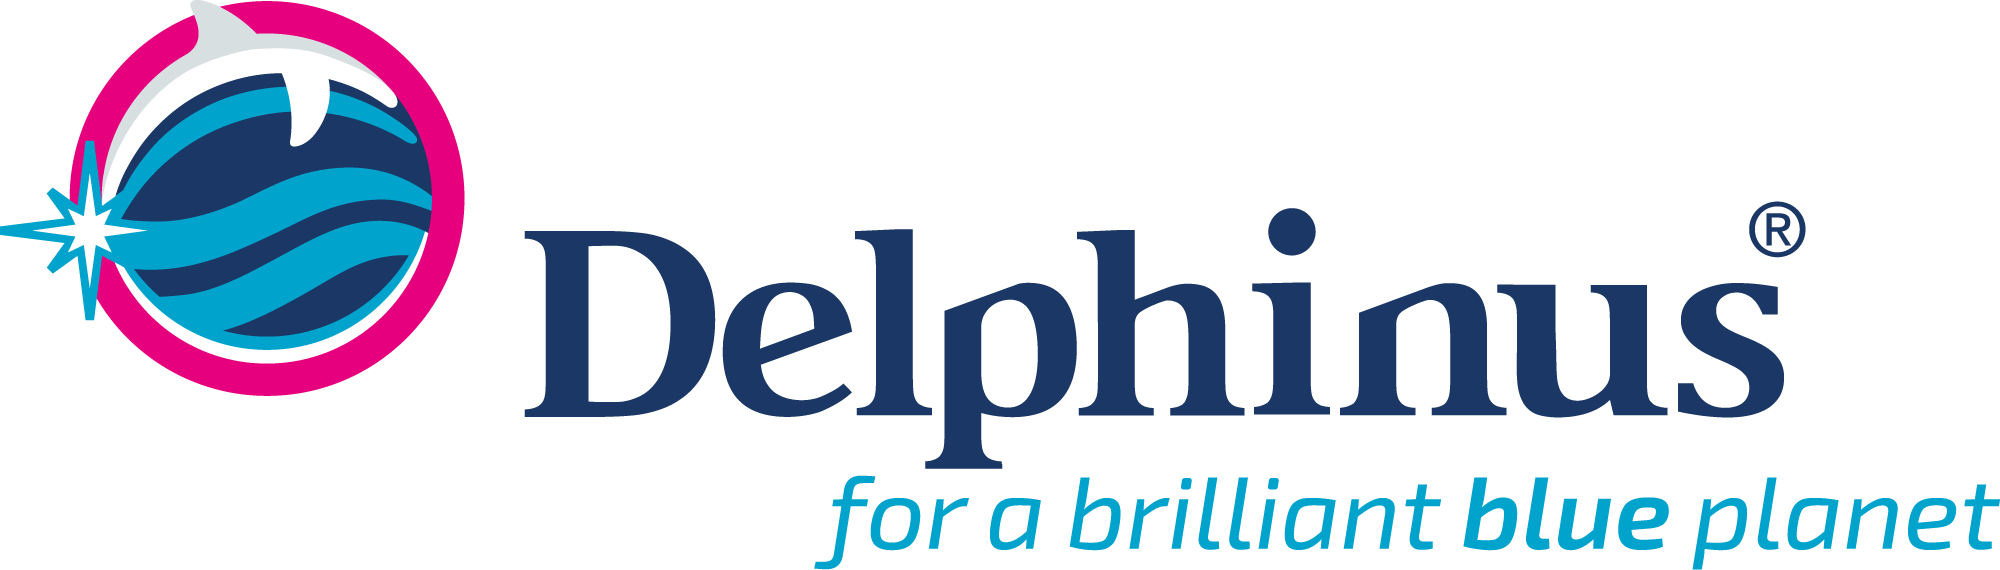 Delphinus Coupons